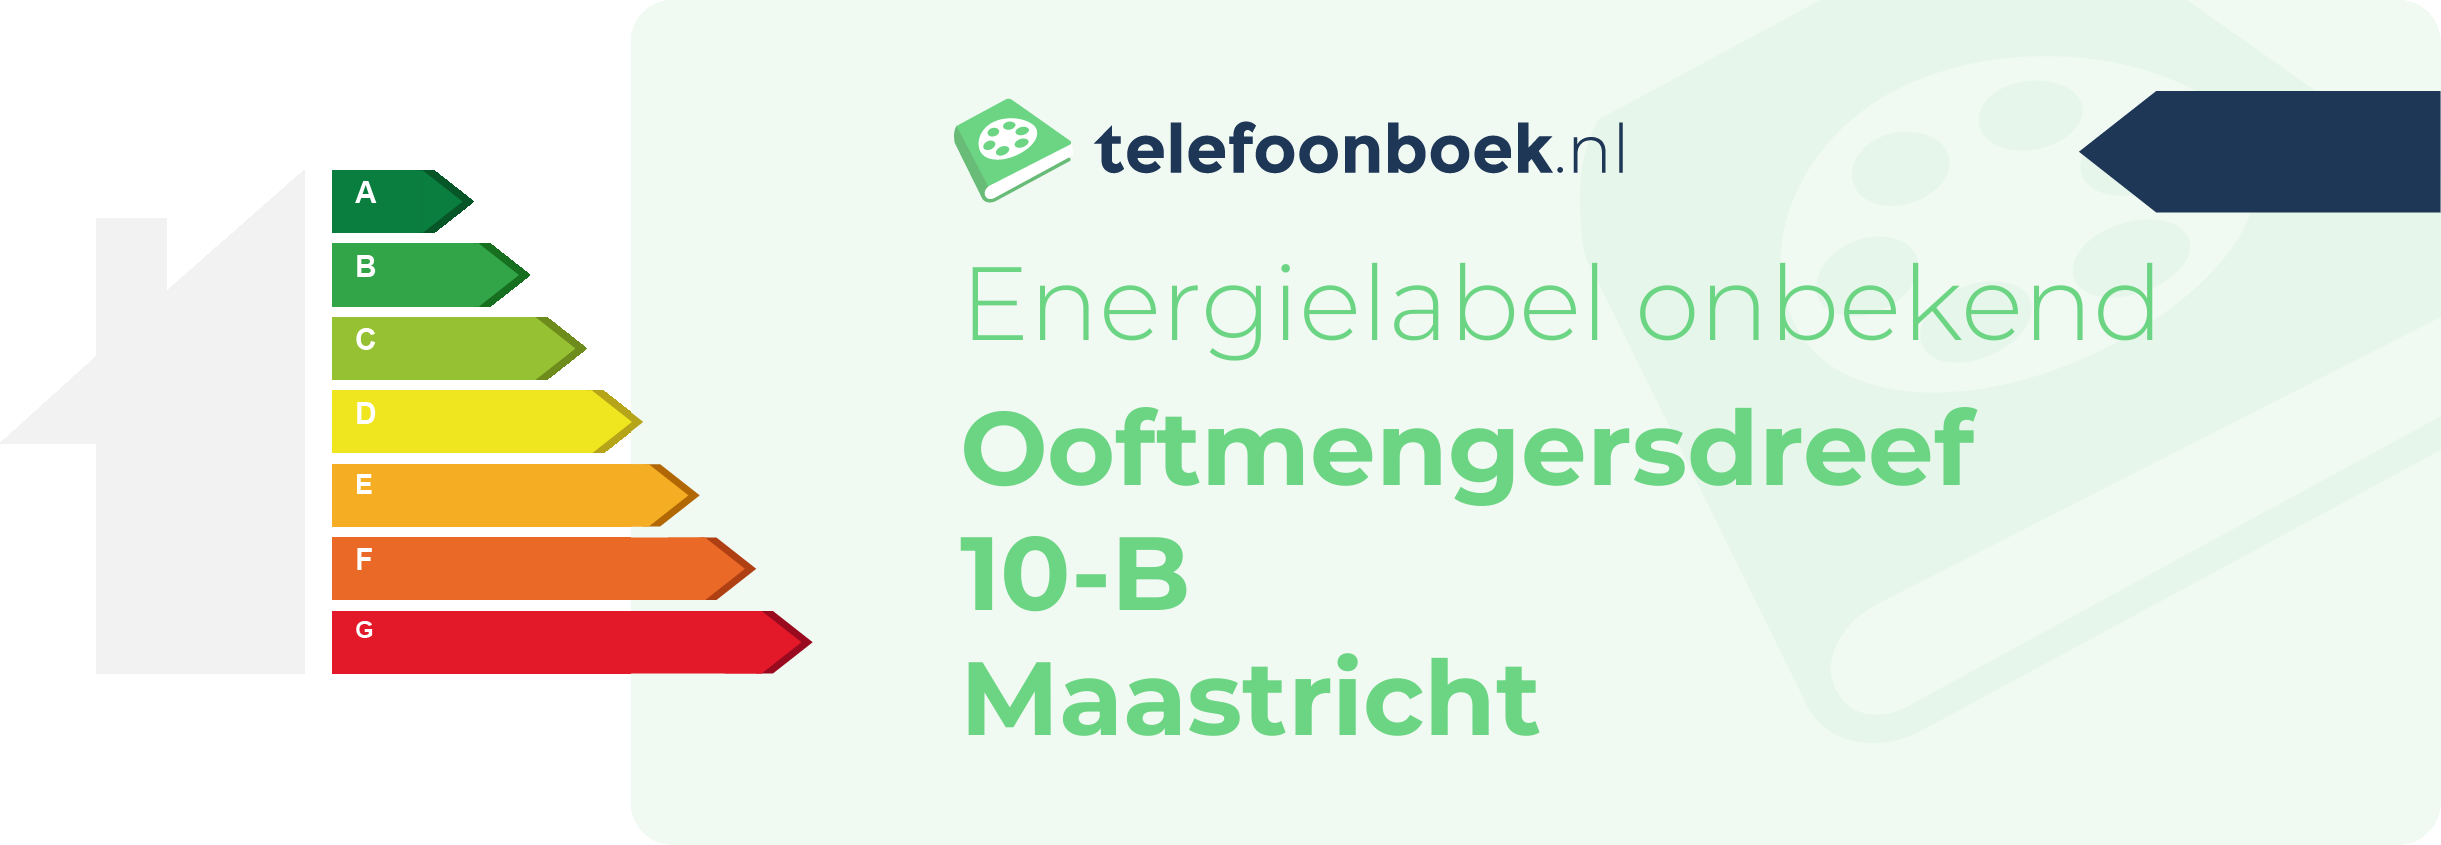 Energielabel Ooftmengersdreef 10-B Maastricht